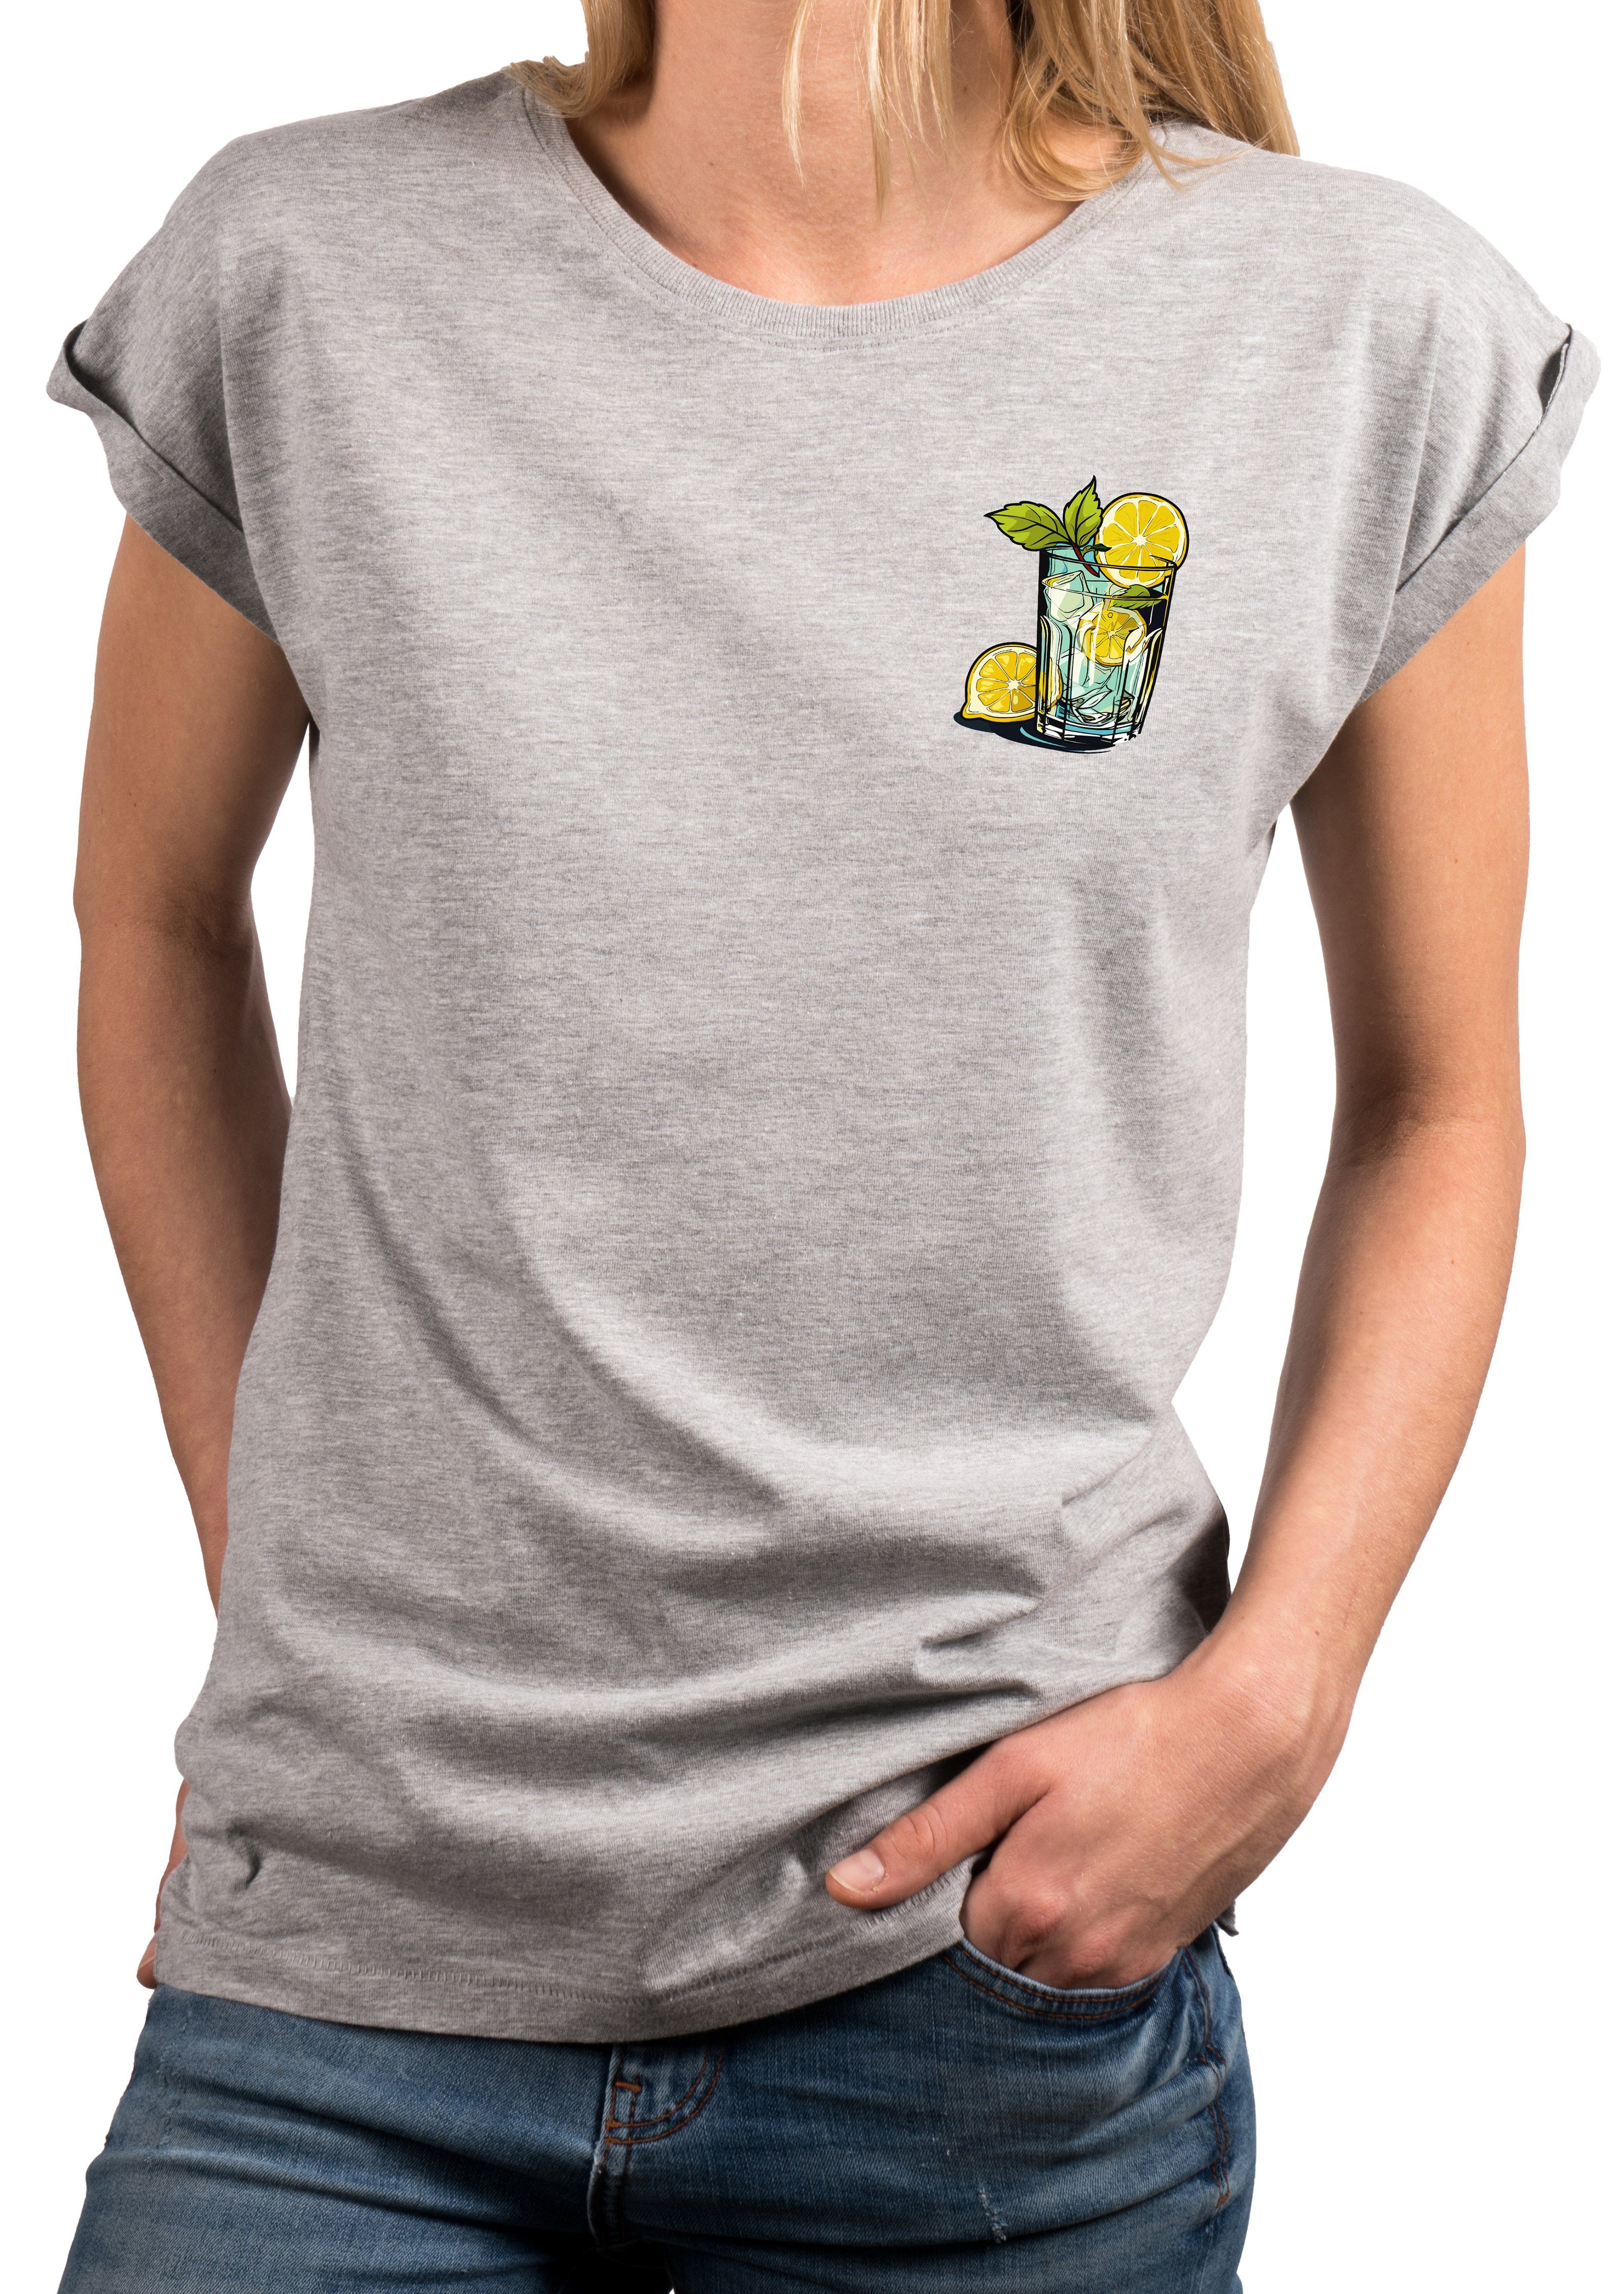 MAKAYA Print-Shirt Gin Tonic Gläser schöne modische Damen Tops Kurzarm Oberteile mit Druck, große Größen Hellgrau